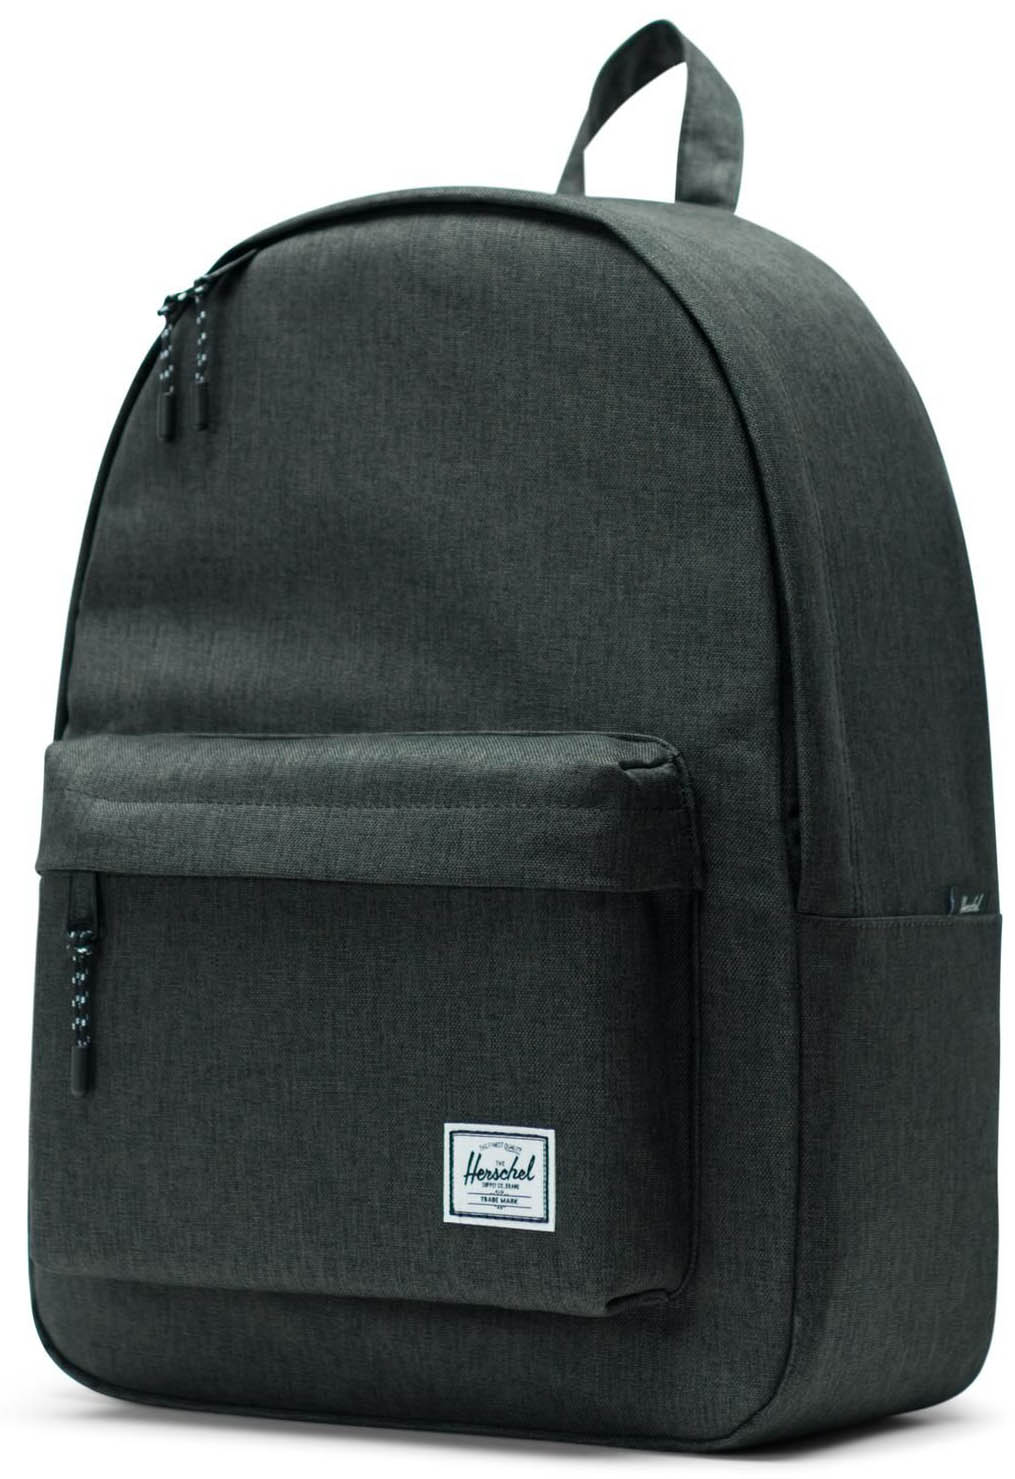 Herschel Classic Backpack - Black Crosshatch